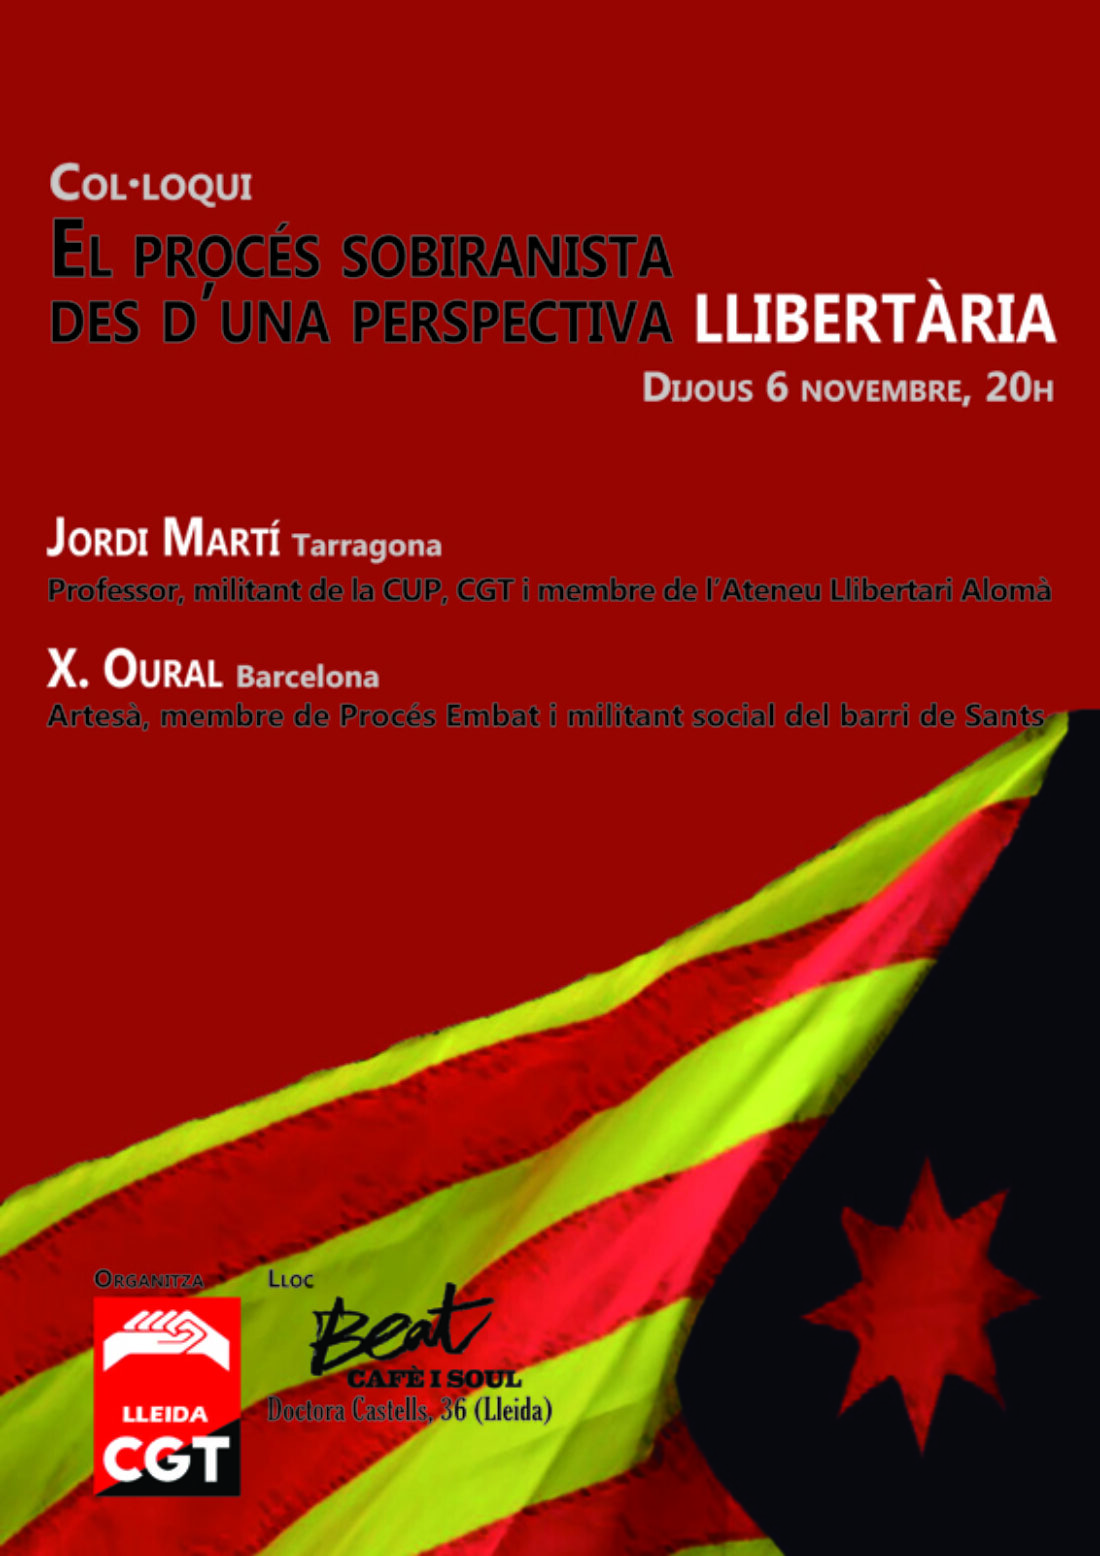 6-N Coloquio en Lleida: El Proceso Soberanista desde una perspectiva Libertaria